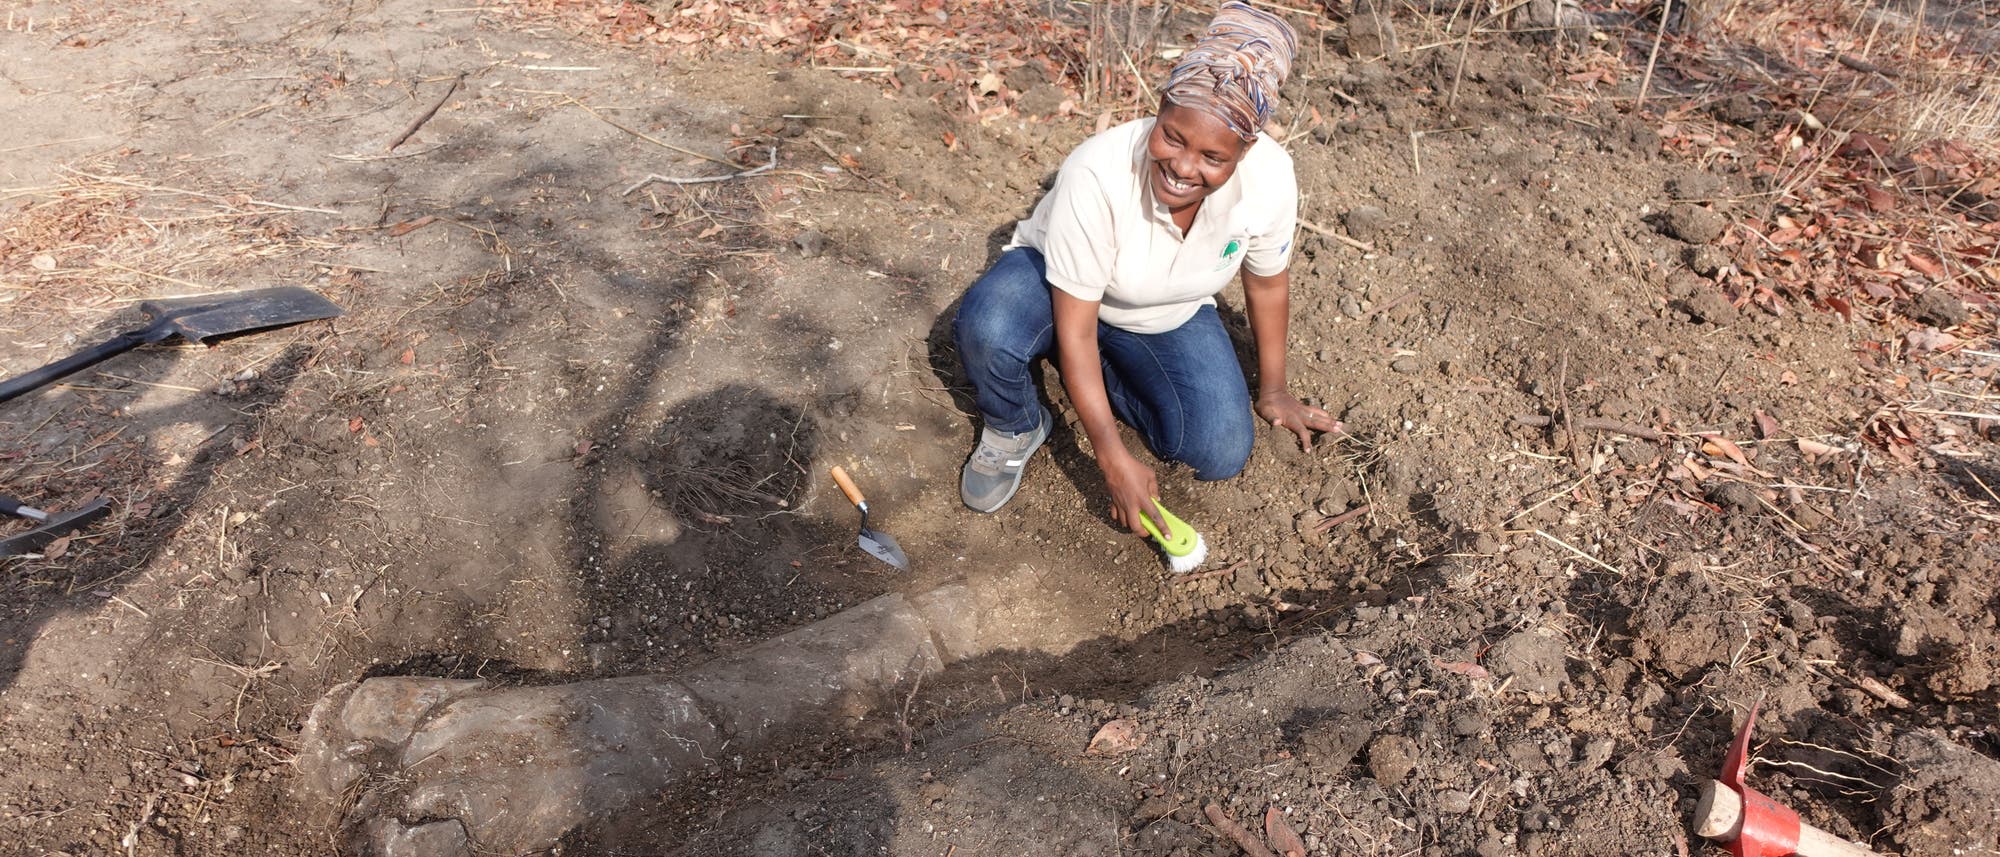 Ein Teammitglied aus Tansania bei der Freilegung eines Sauropodenknochens